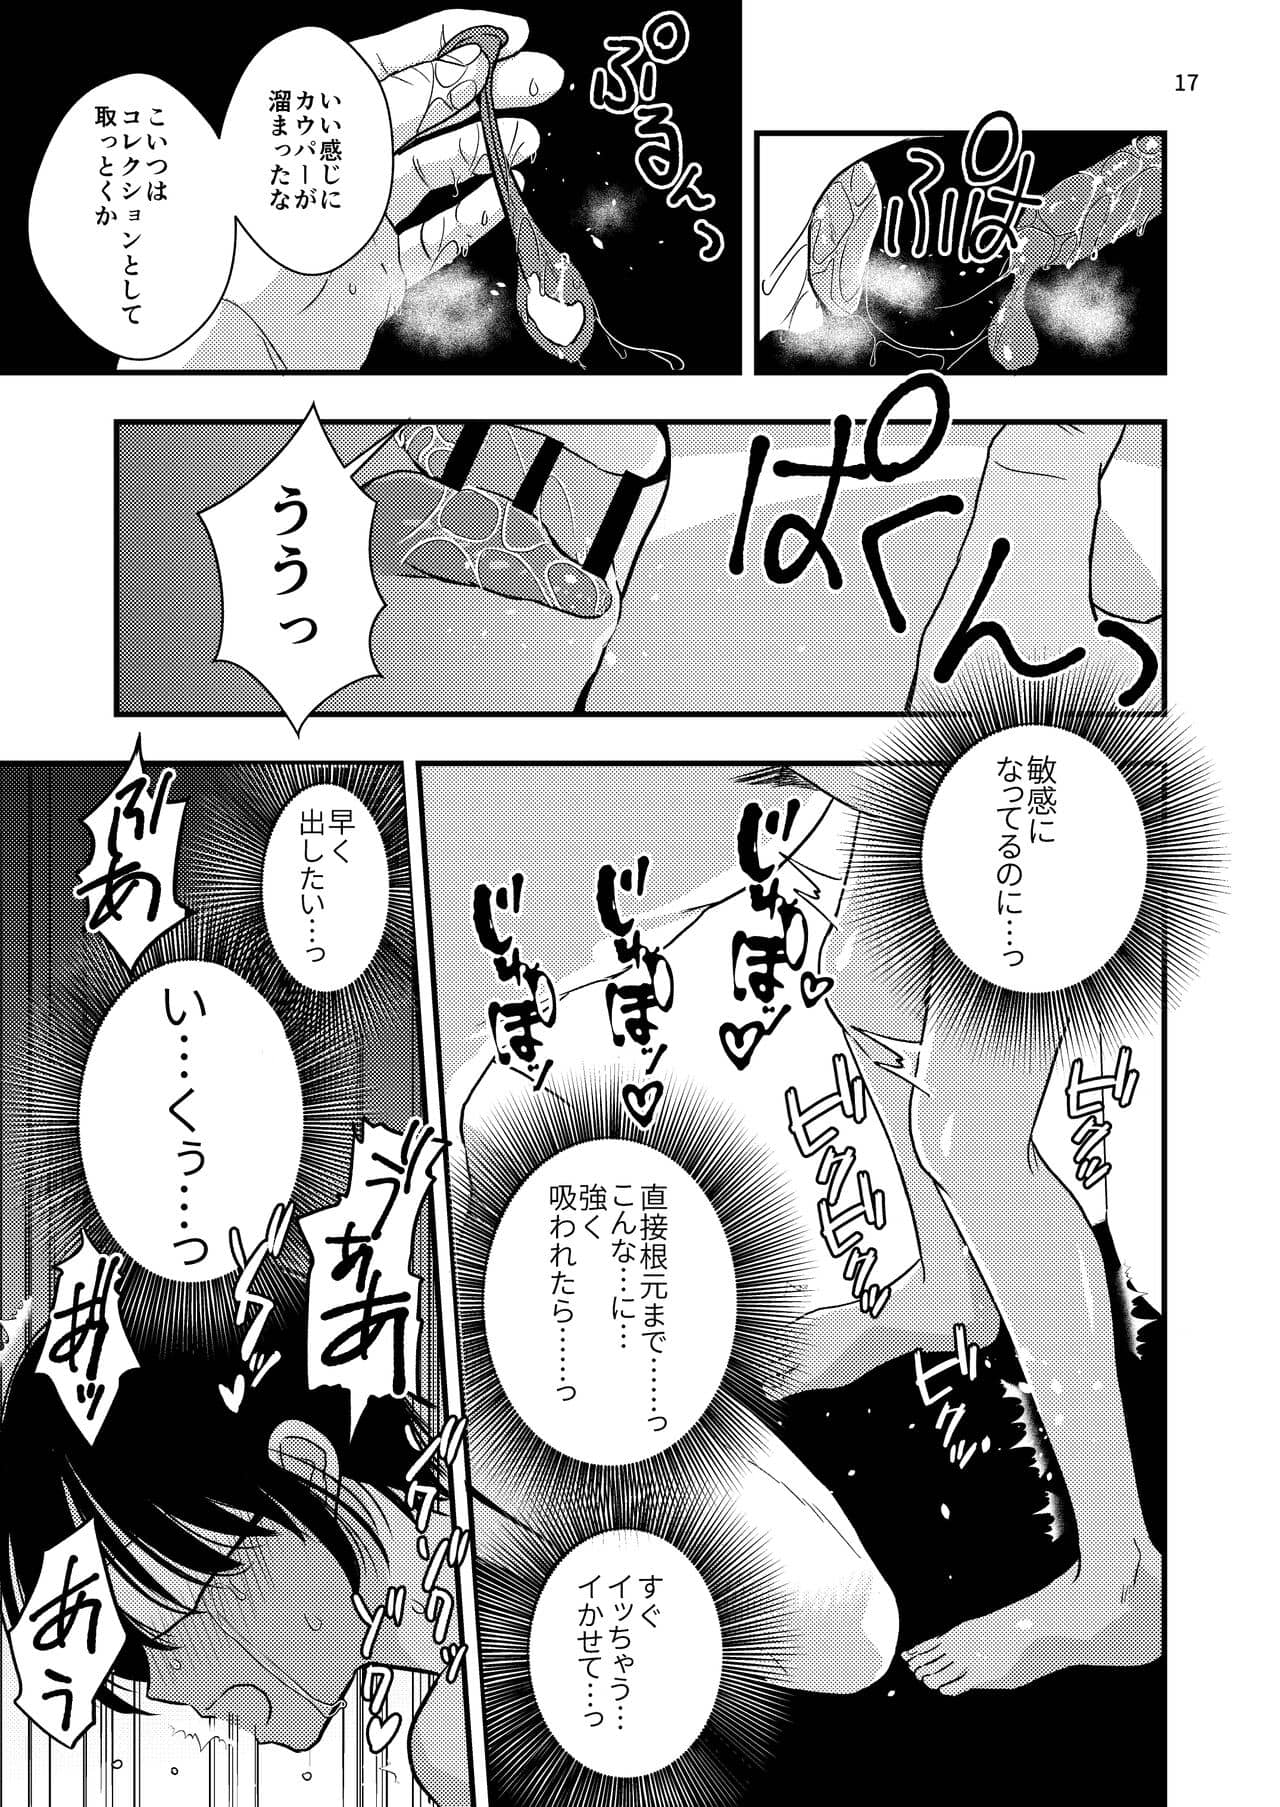 Yokubo Kaikyu Dai 570 Sho - Natsu no Kusuri Re × Renzoku Akume Shoji × Shiri Shojo Re × Rin'o Sareta Boku. Joso Kosupureiya Iori Kun no Baai - Foto 17